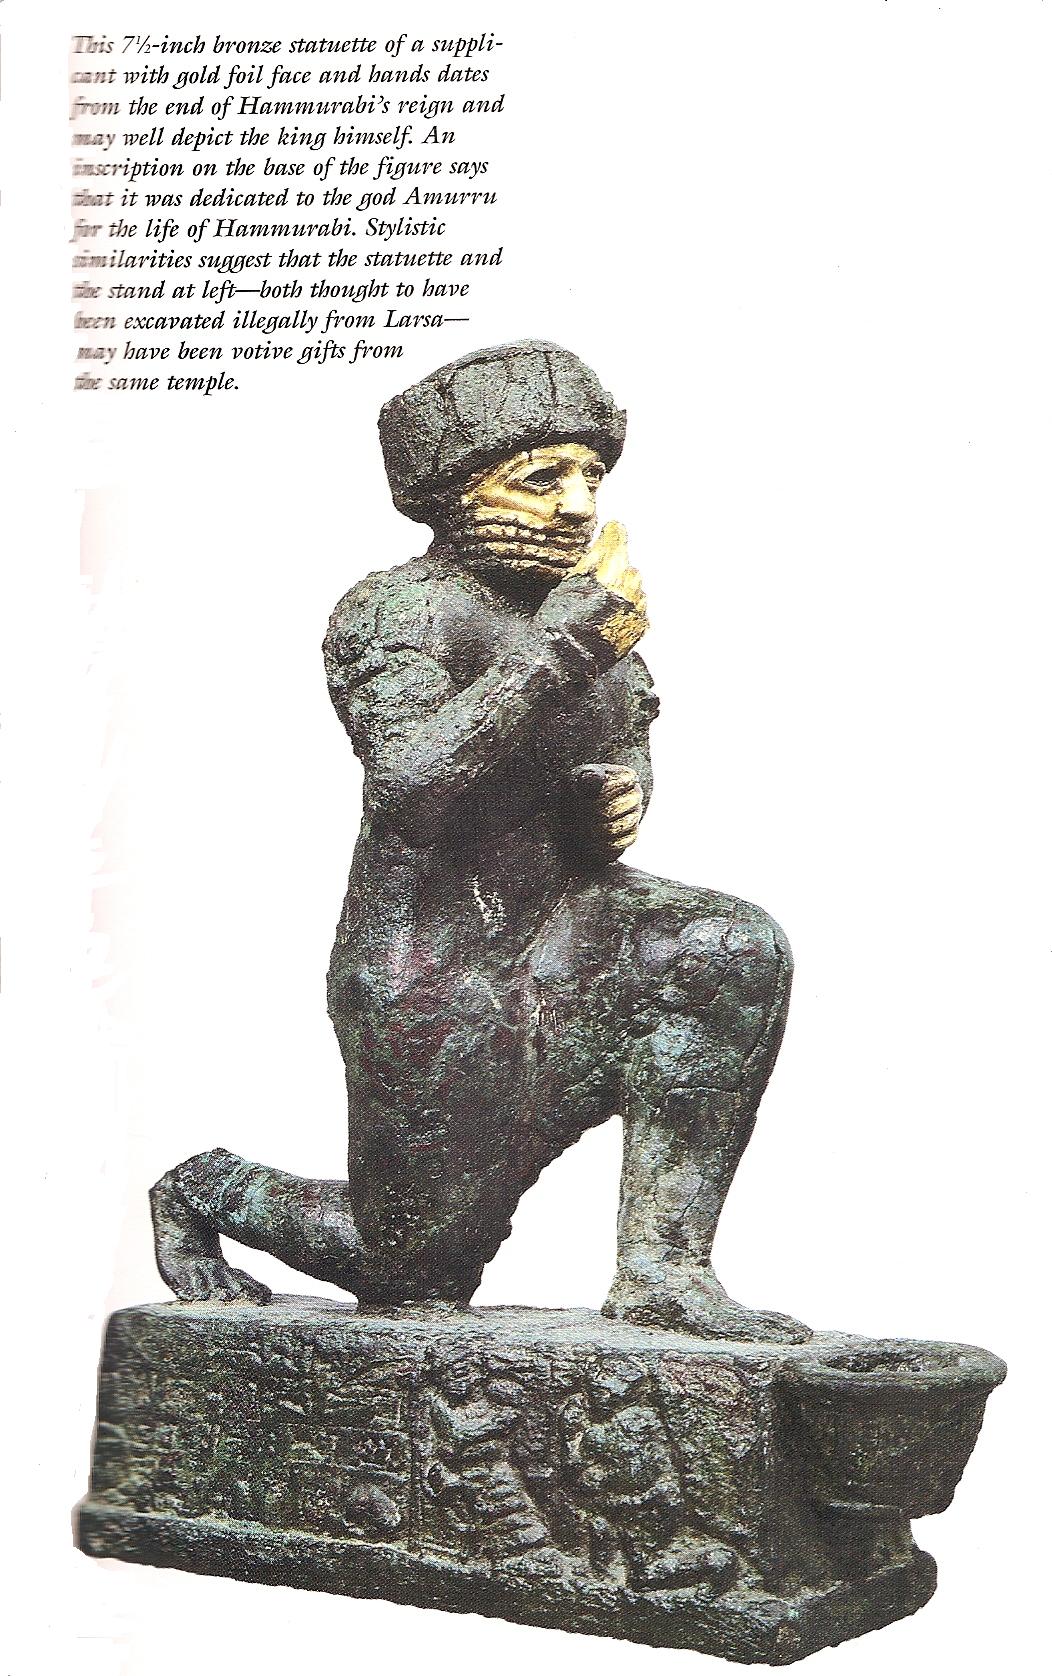 2i - Hammurabi, devout king of the gods